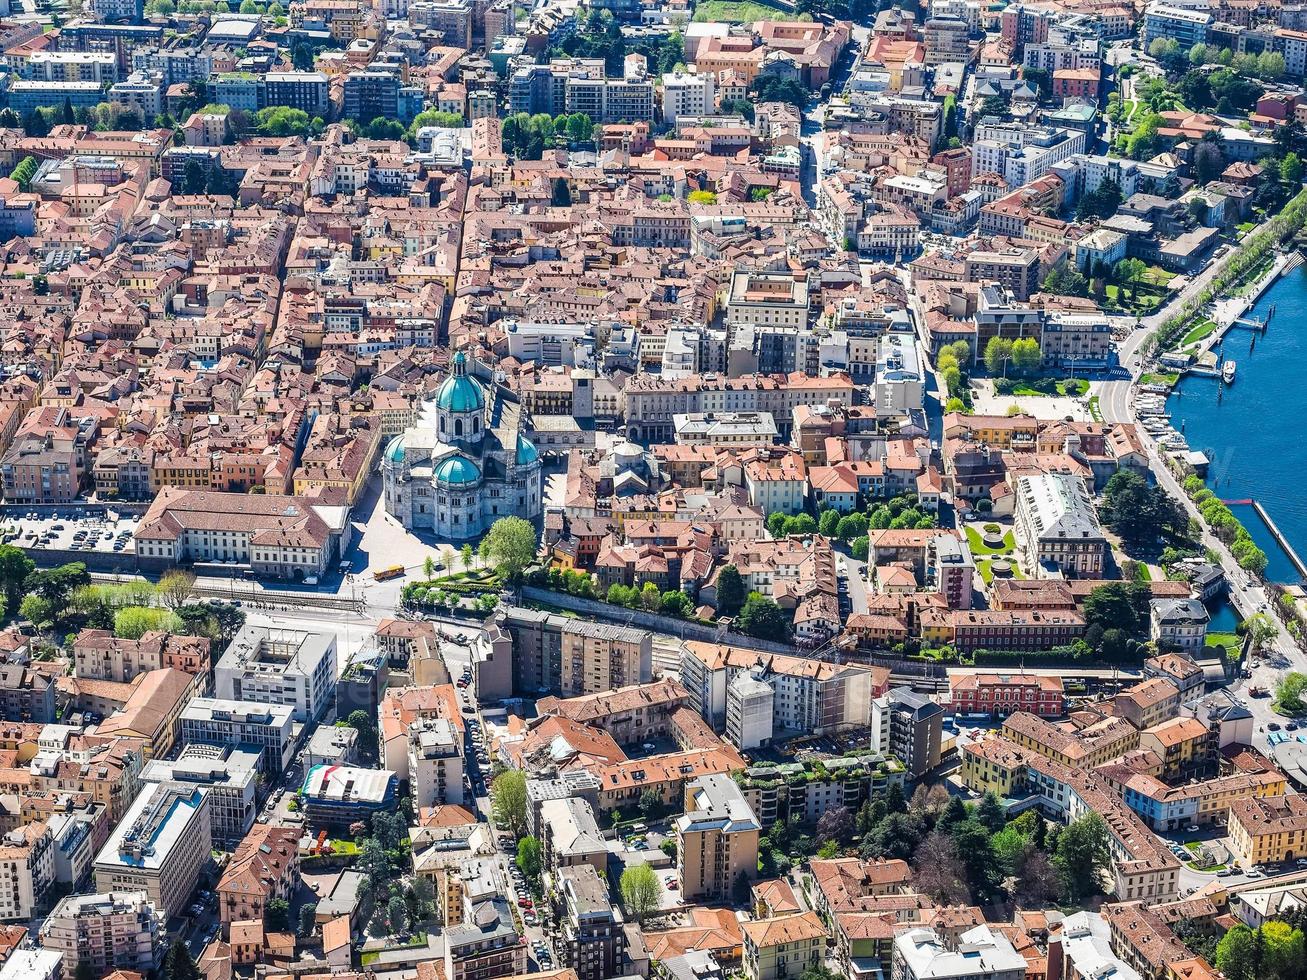 hdr vista aérea de como, italia foto